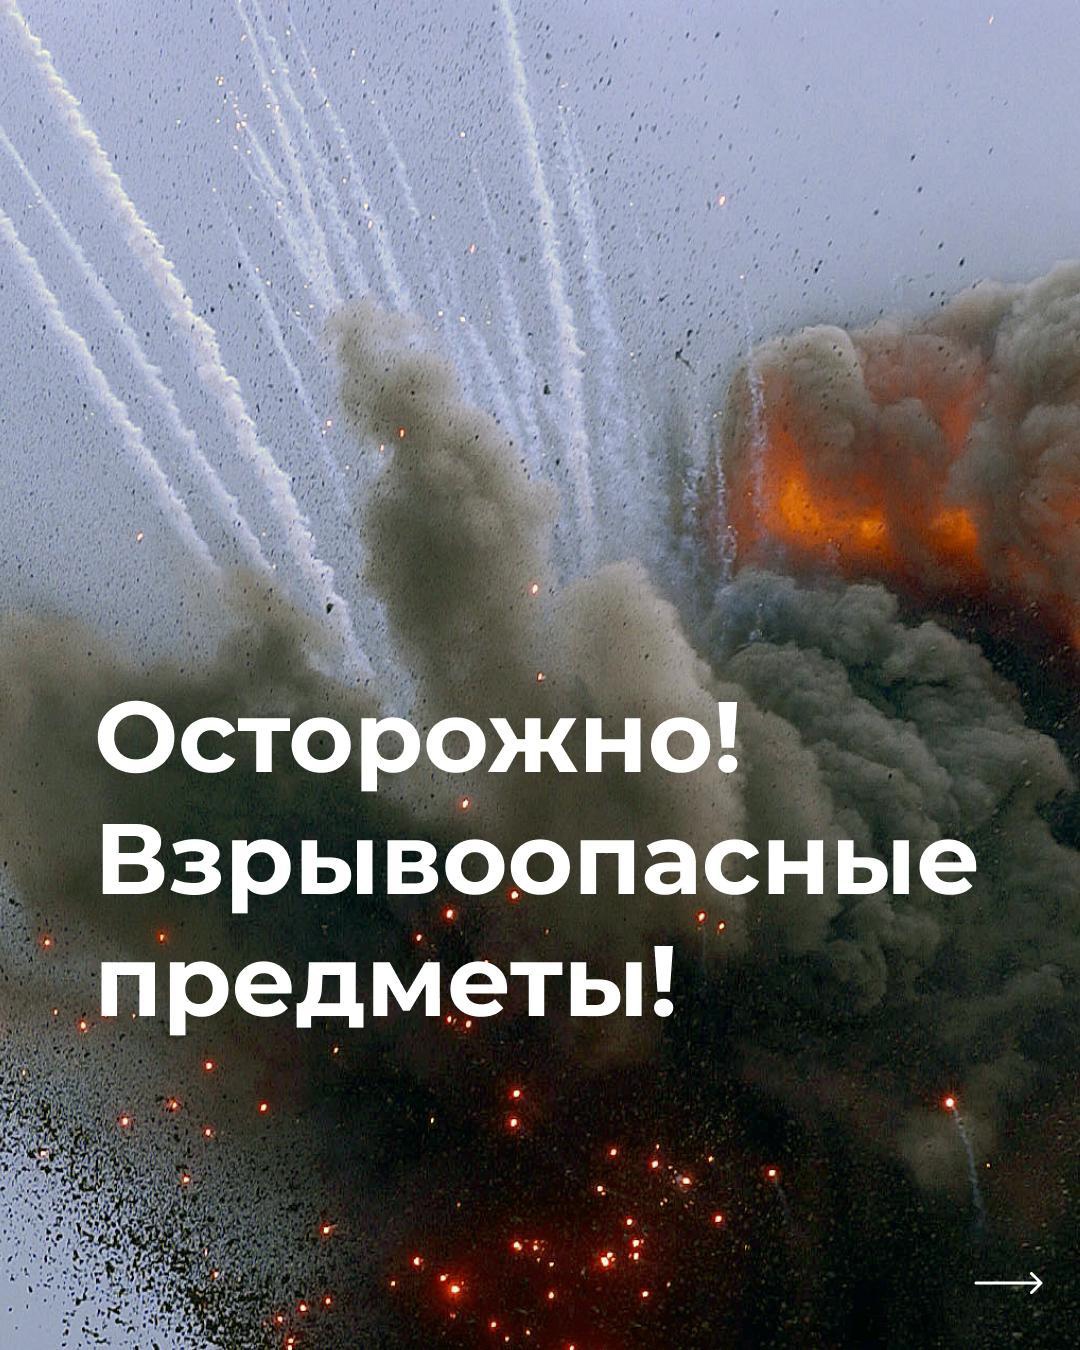 Управление по делам гражданской обороны и чрезвычайным ситуациям Белгородской области подготовило памятку для жителей региона: «Осторожно! Взрывоопасные предметы!»